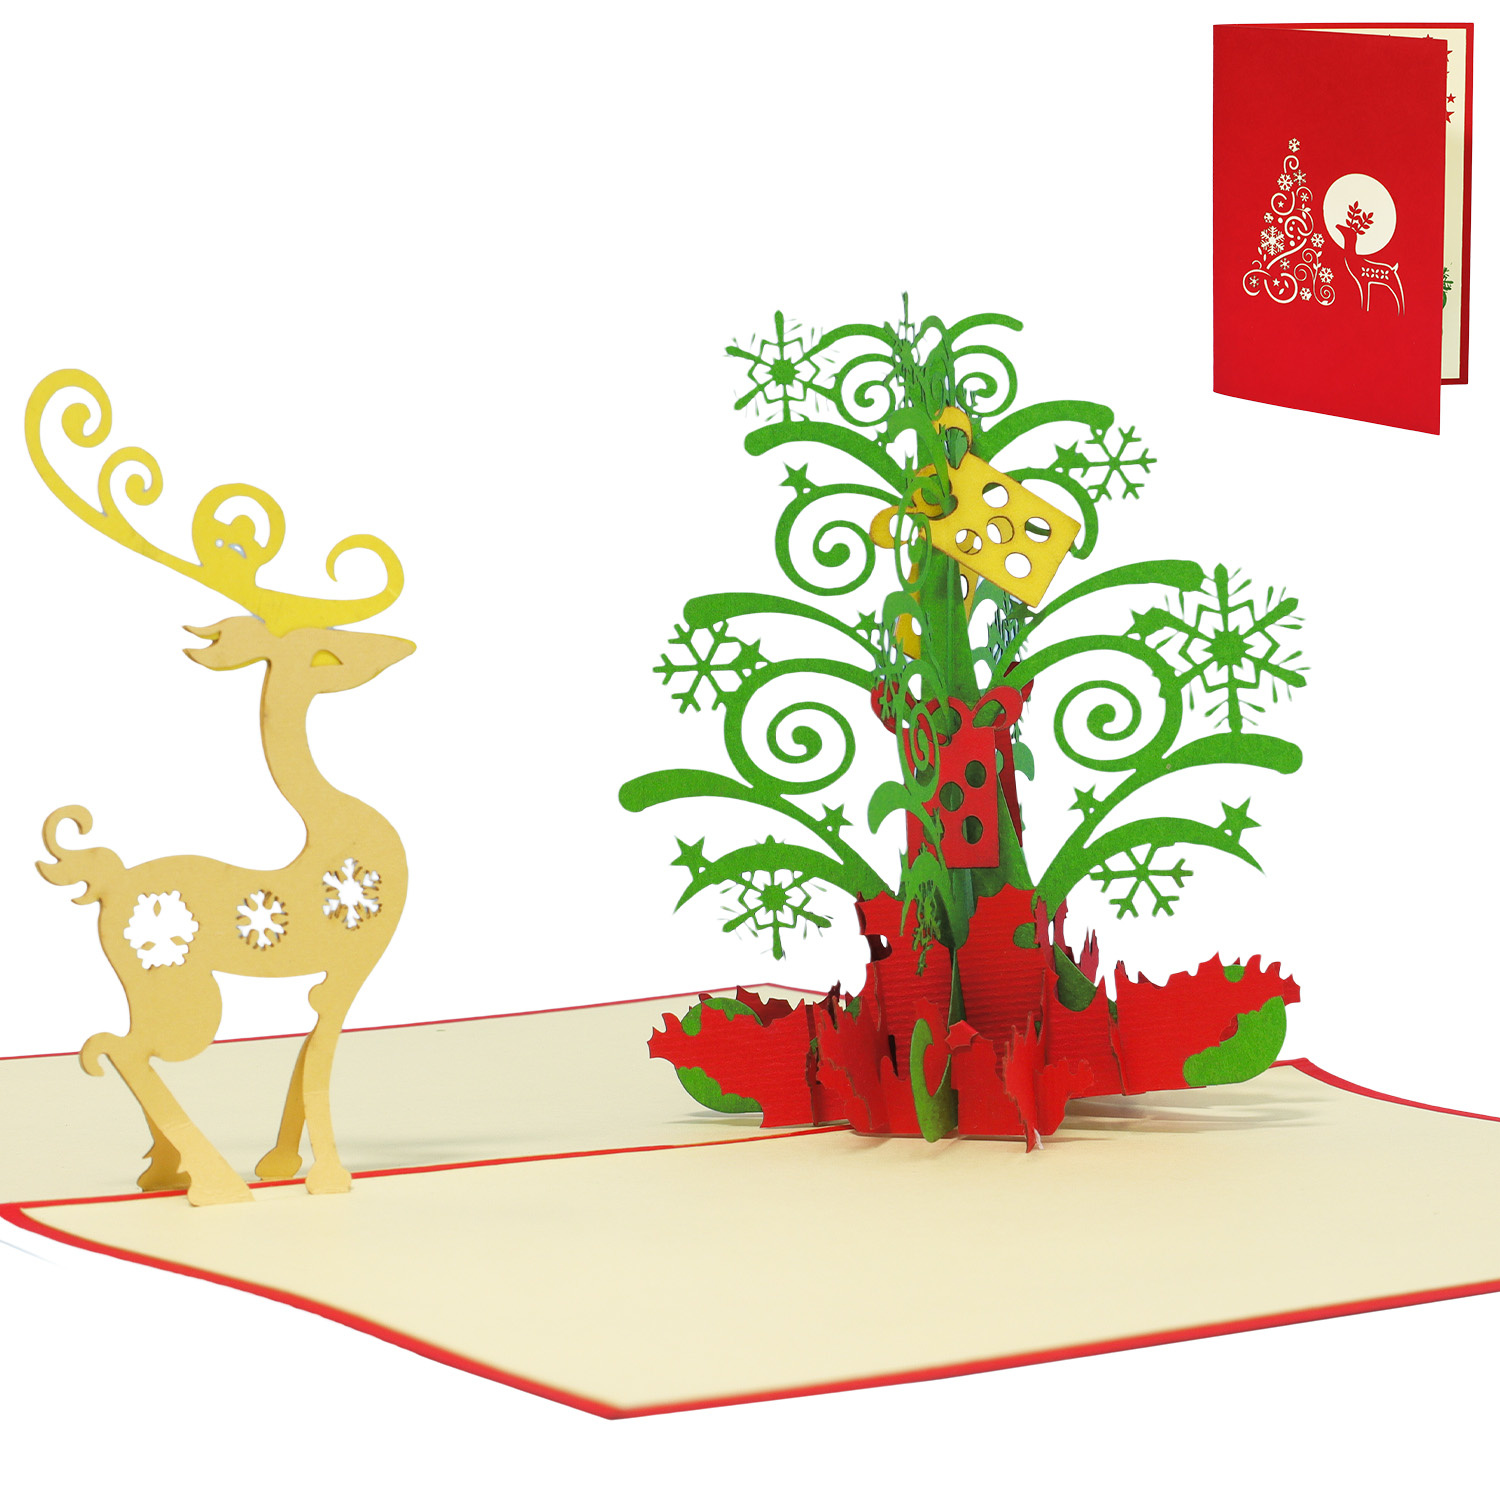 LINPOPUP Pop Up 3D Karte, Weihnachtskarte, Glückwunschkarte, Weihnachtsbaum, Tannenbaum mit Rentier, LIN17561, LINPopUp®, N451